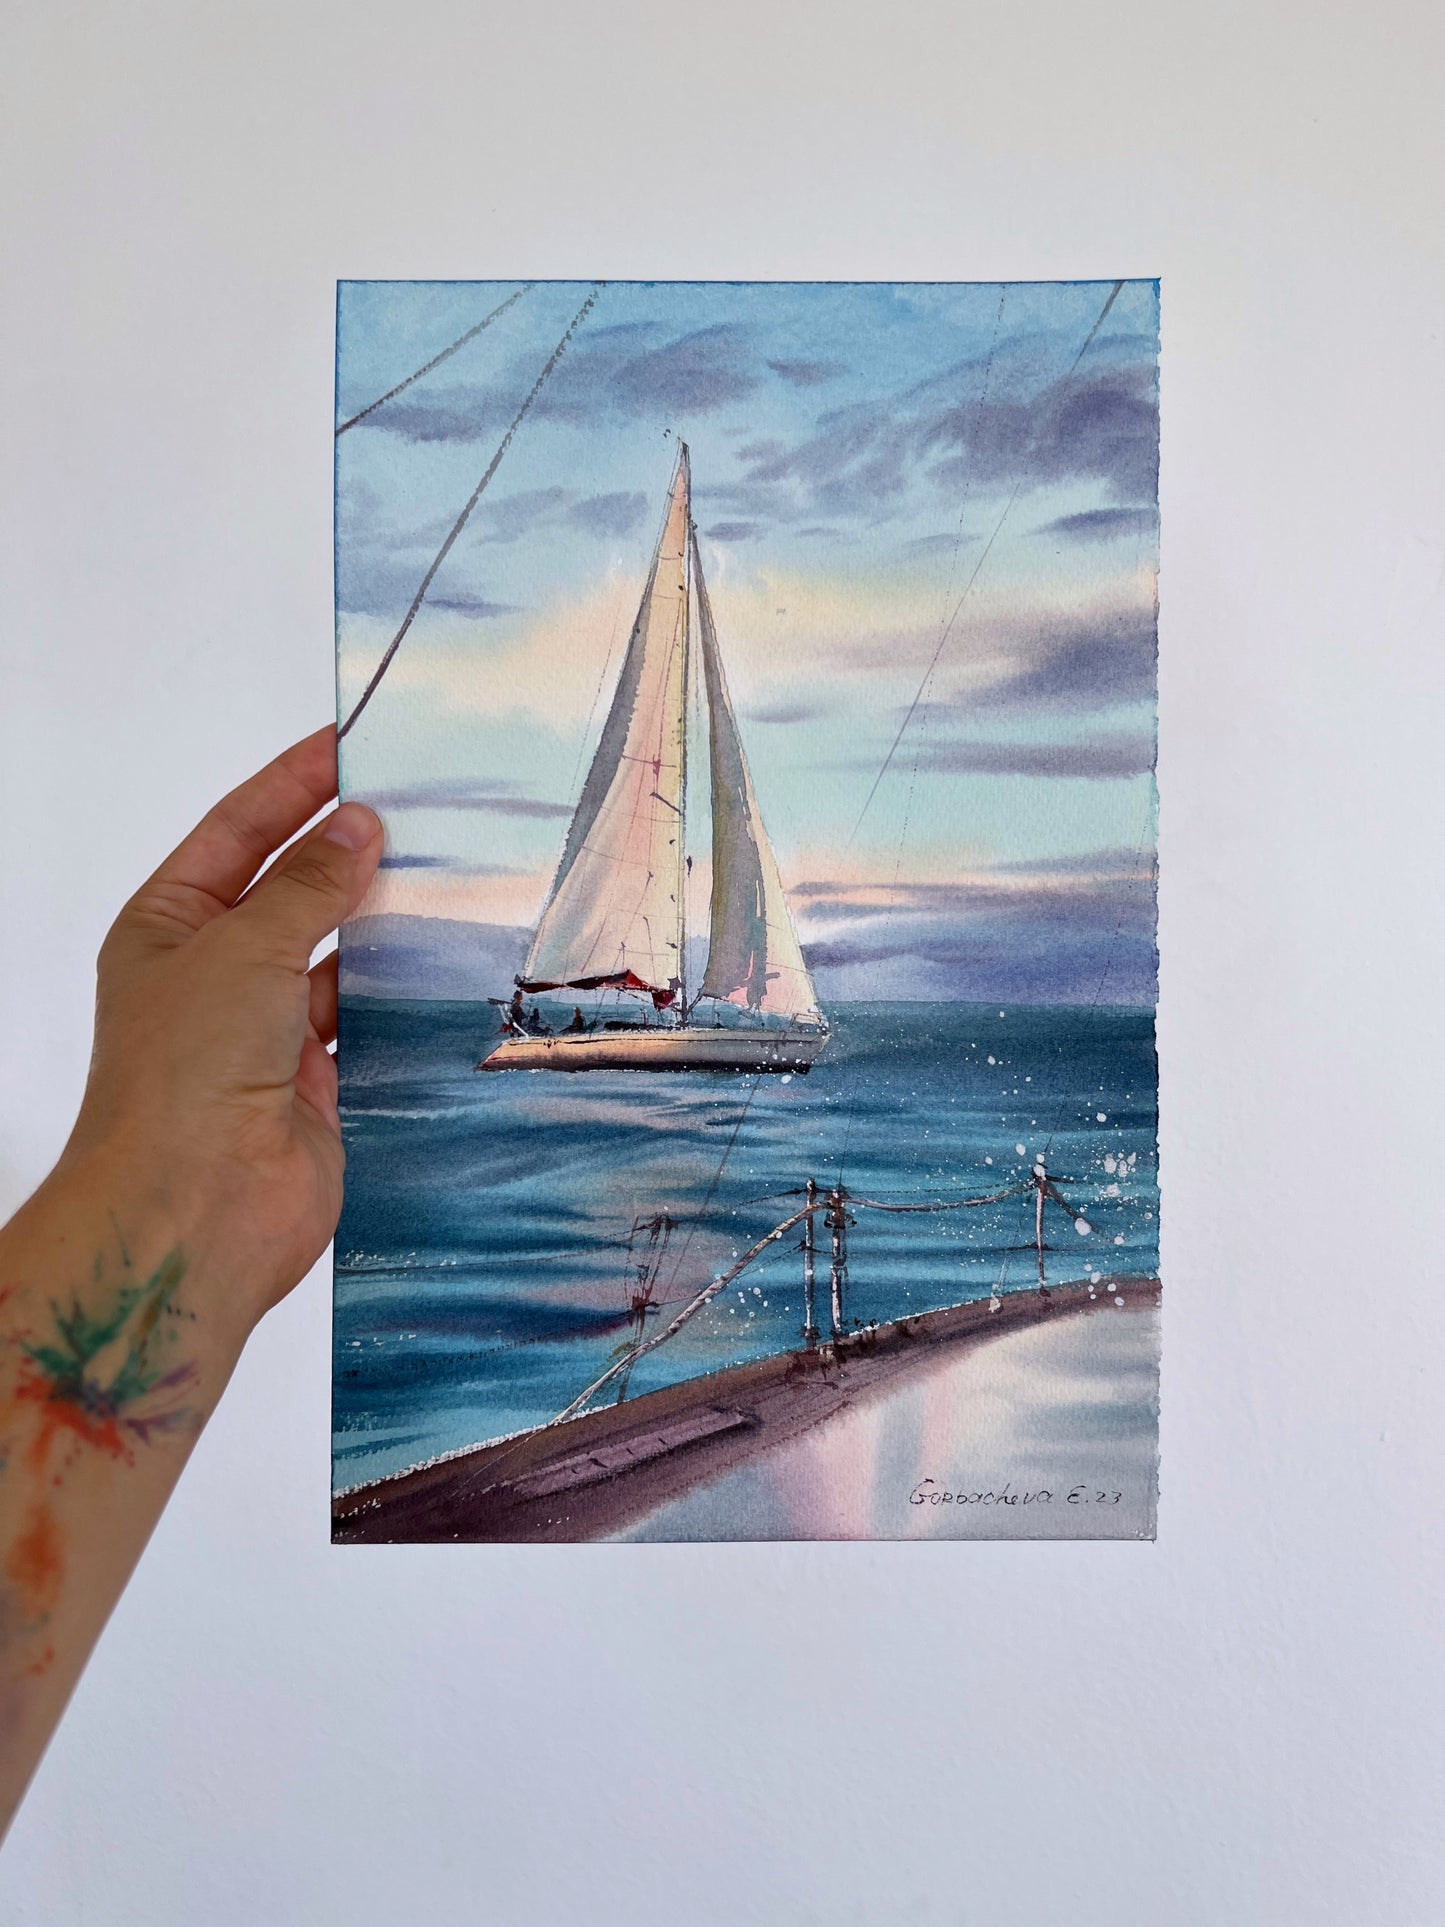 Sea Sailboat Small Painting, Watercolor Original - Yachts at Sea #19